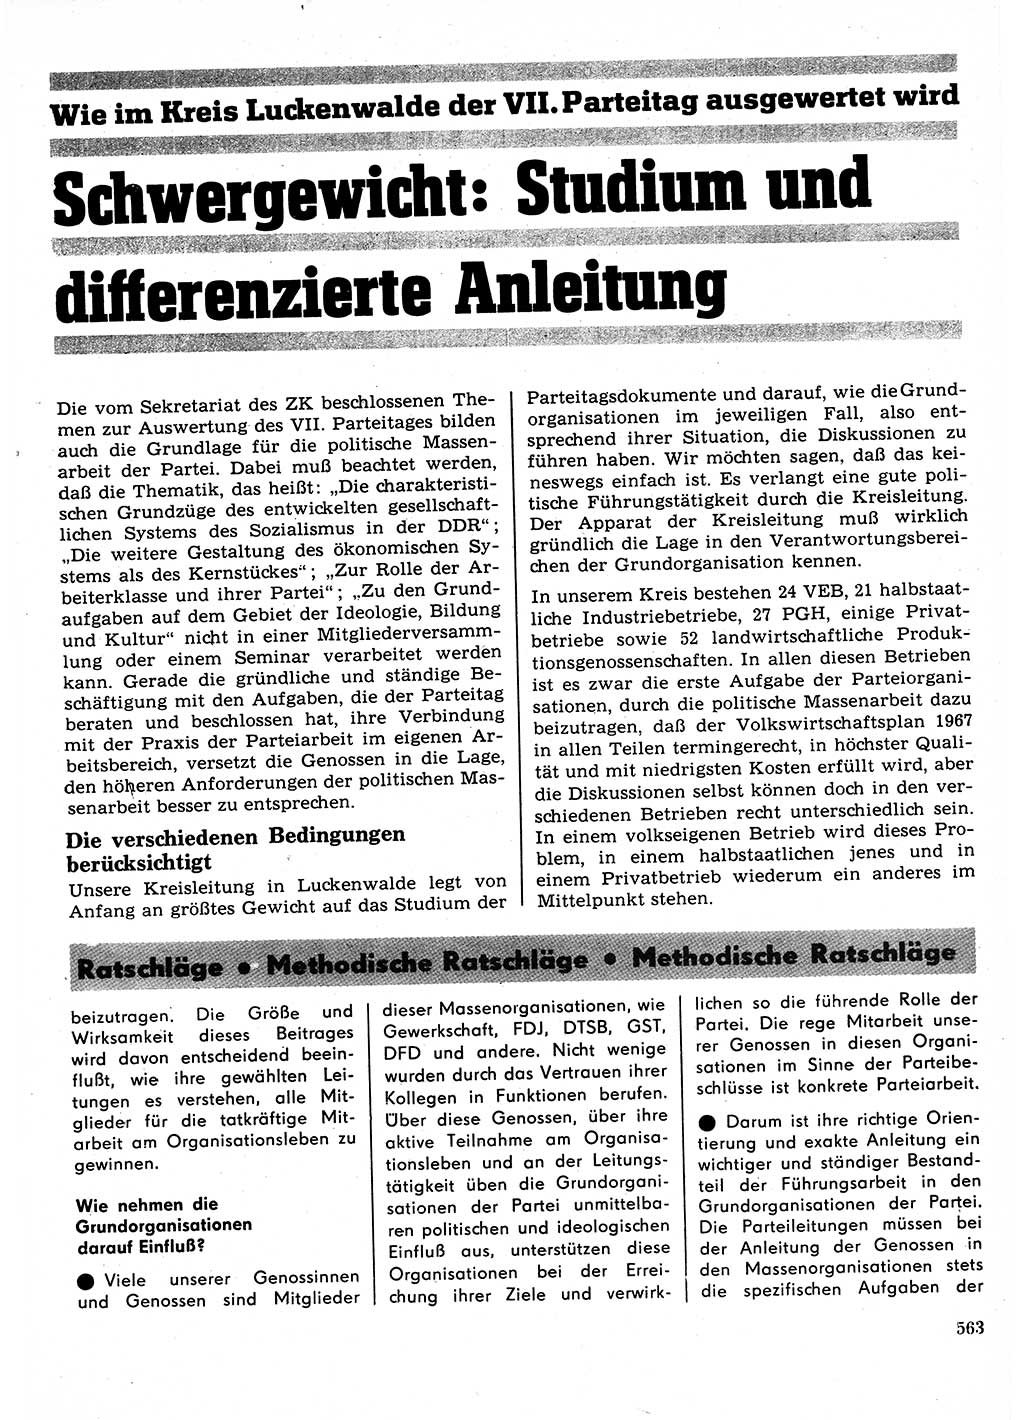 Neuer Weg (NW), Organ des Zentralkomitees (ZK) der SED (Sozialistische Einheitspartei Deutschlands) für Fragen des Parteilebens, 22. Jahrgang [Deutsche Demokratische Republik (DDR)] 1967, Seite 563 (NW ZK SED DDR 1967, S. 563)